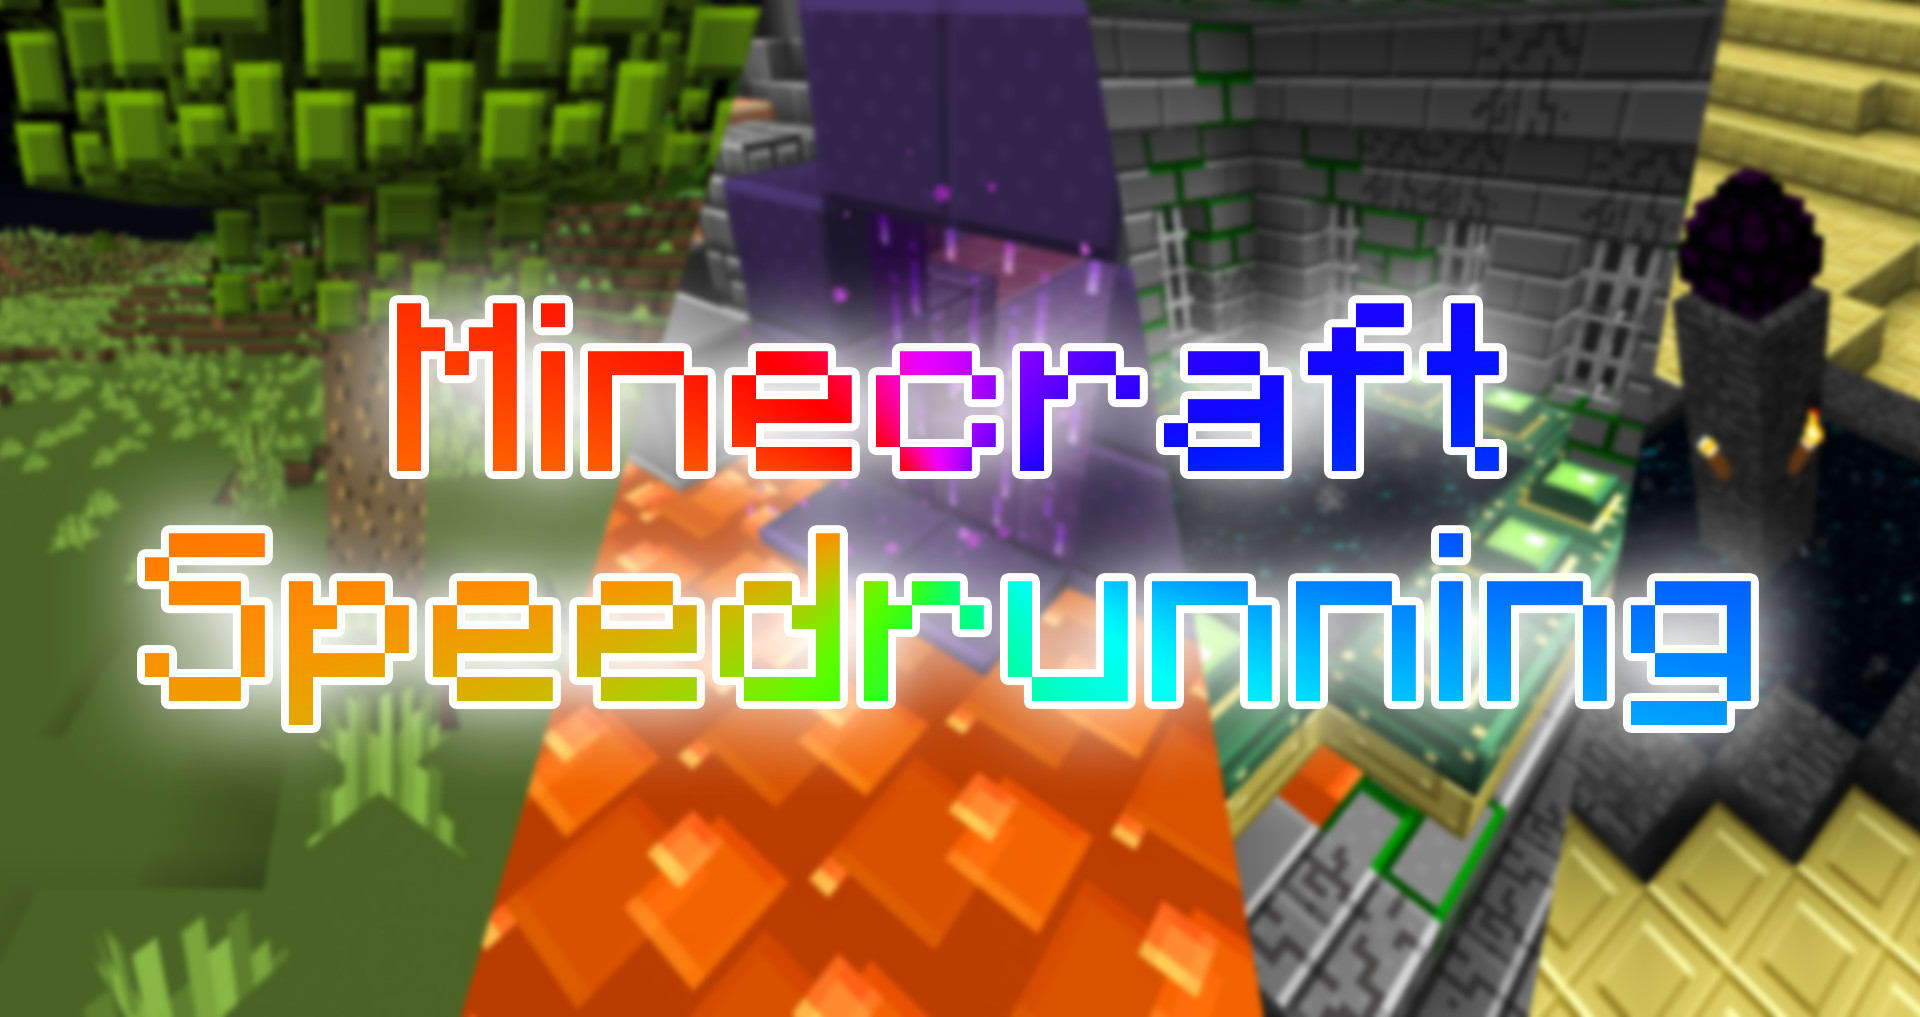 Speedrunning in Minecraft Marketplace